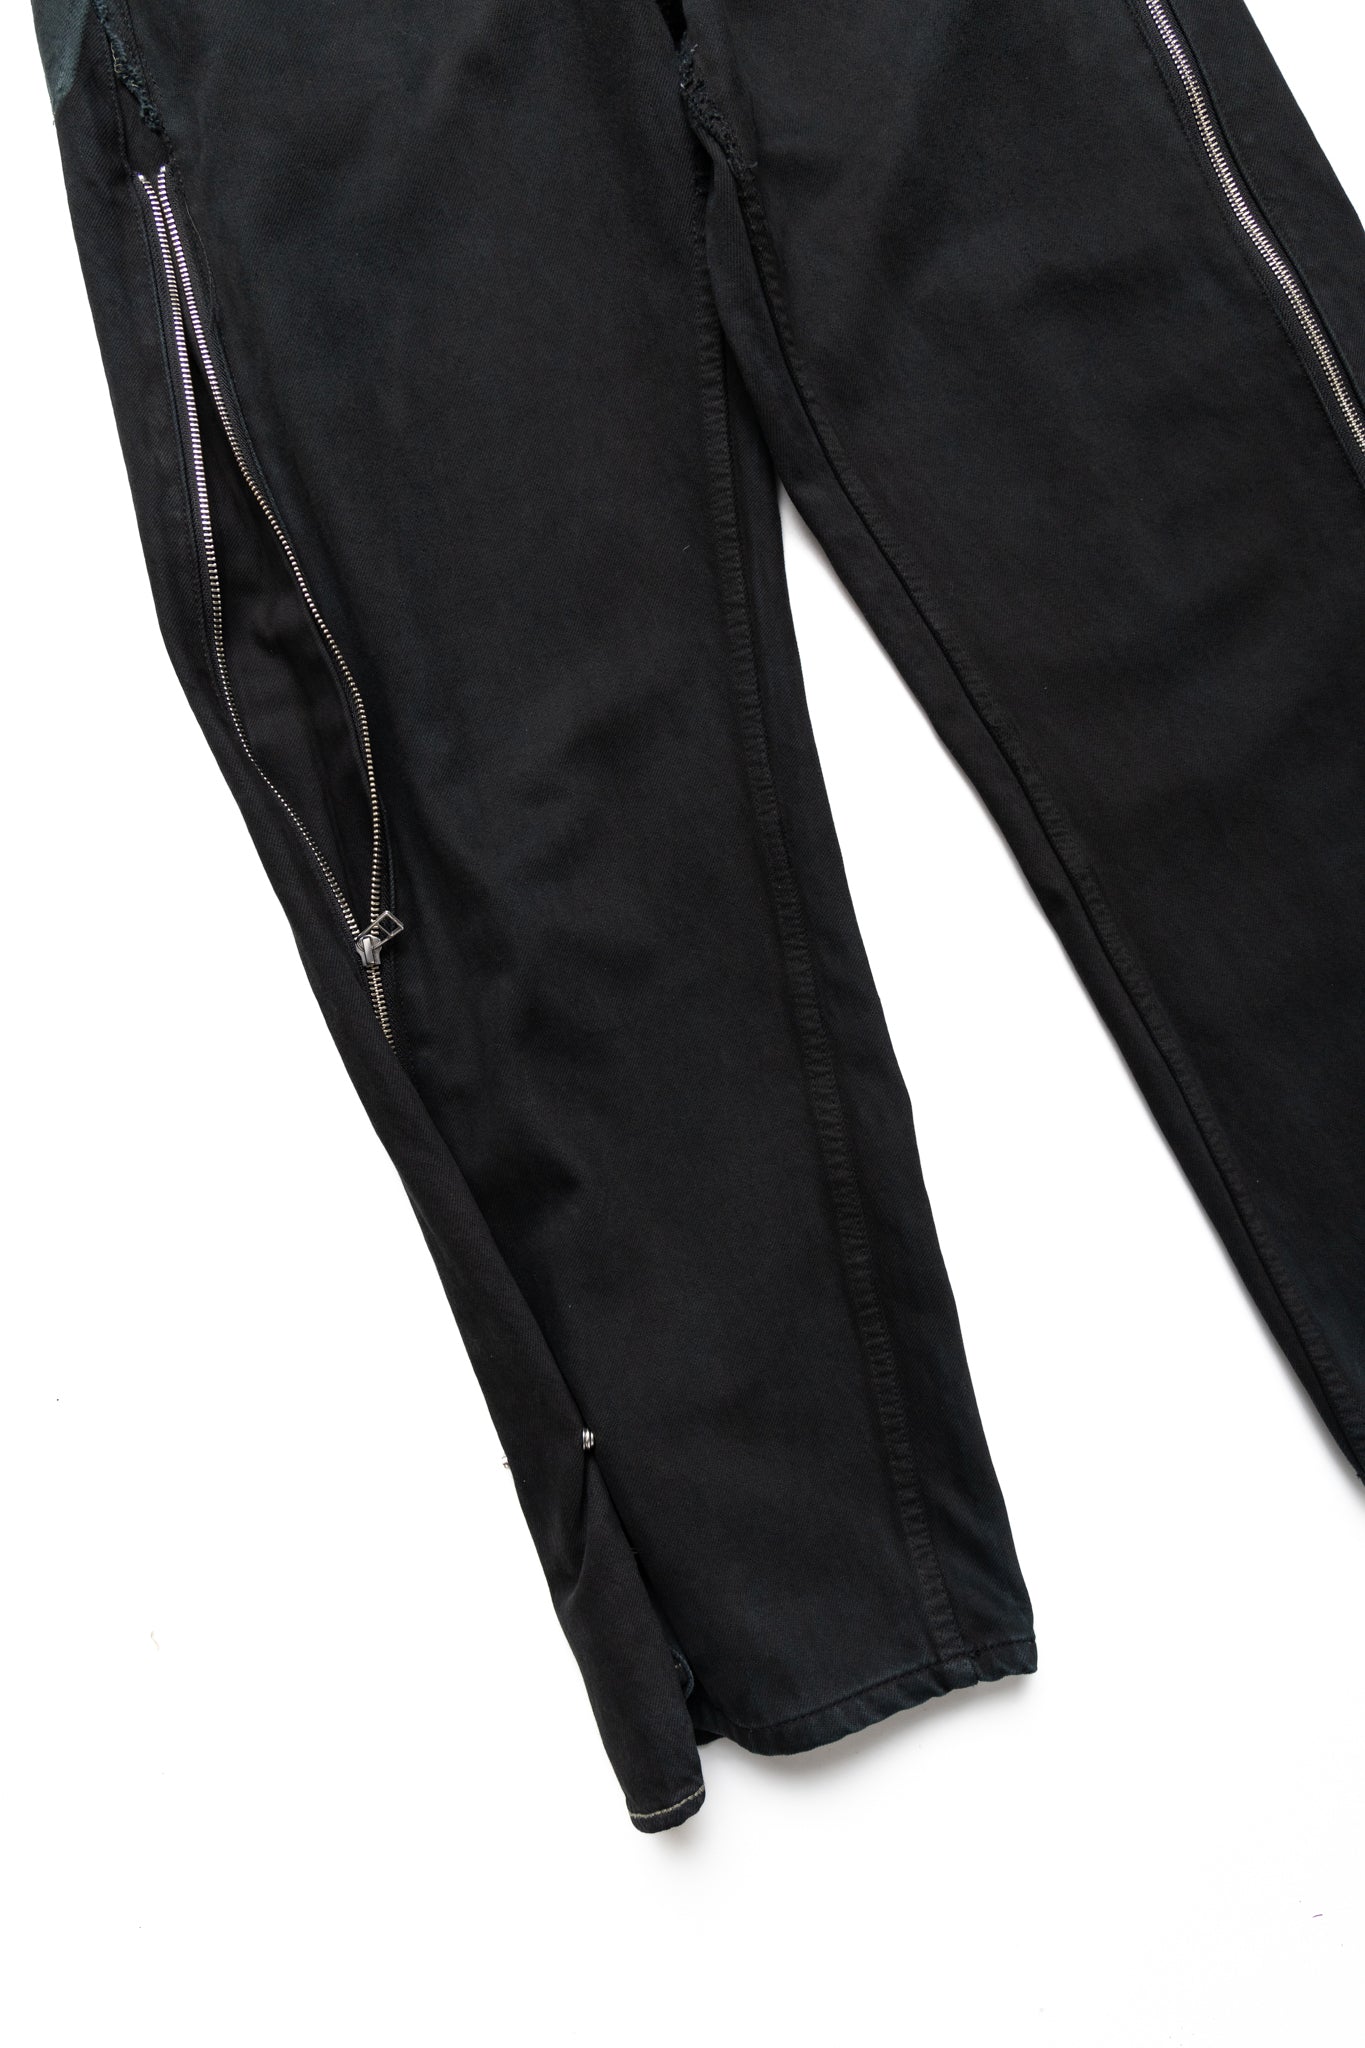 Zip Baggy Jeans Black - S (2)